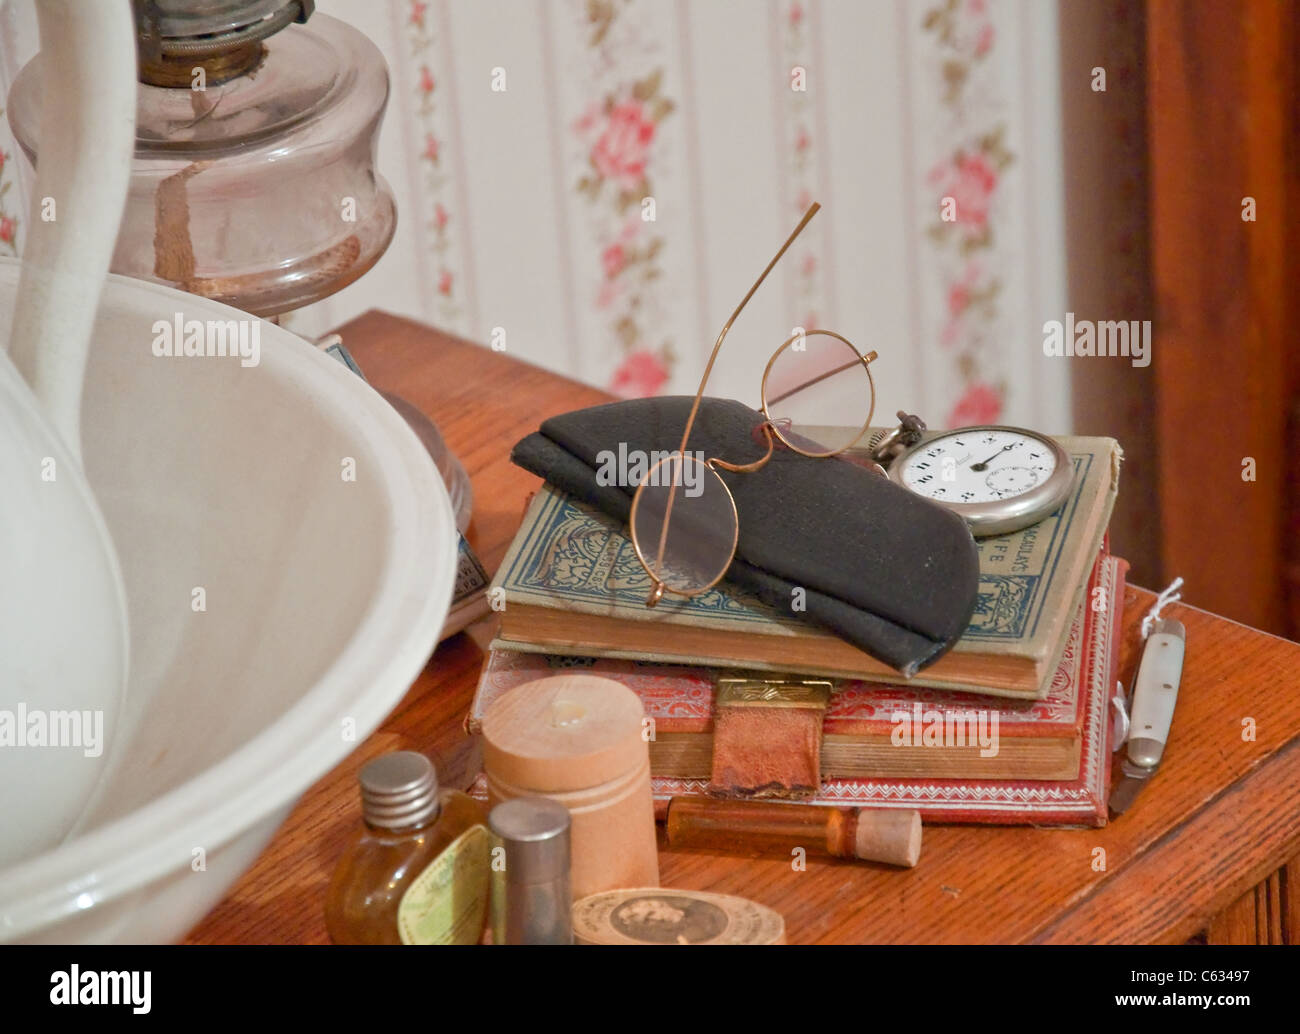 Questo stock immagine mostra vintage gli occhiali da lettura sulla parte superiore del retro libri, un orologio da tasca e altri articoli da toeletta oggetti antichi. Foto Stock